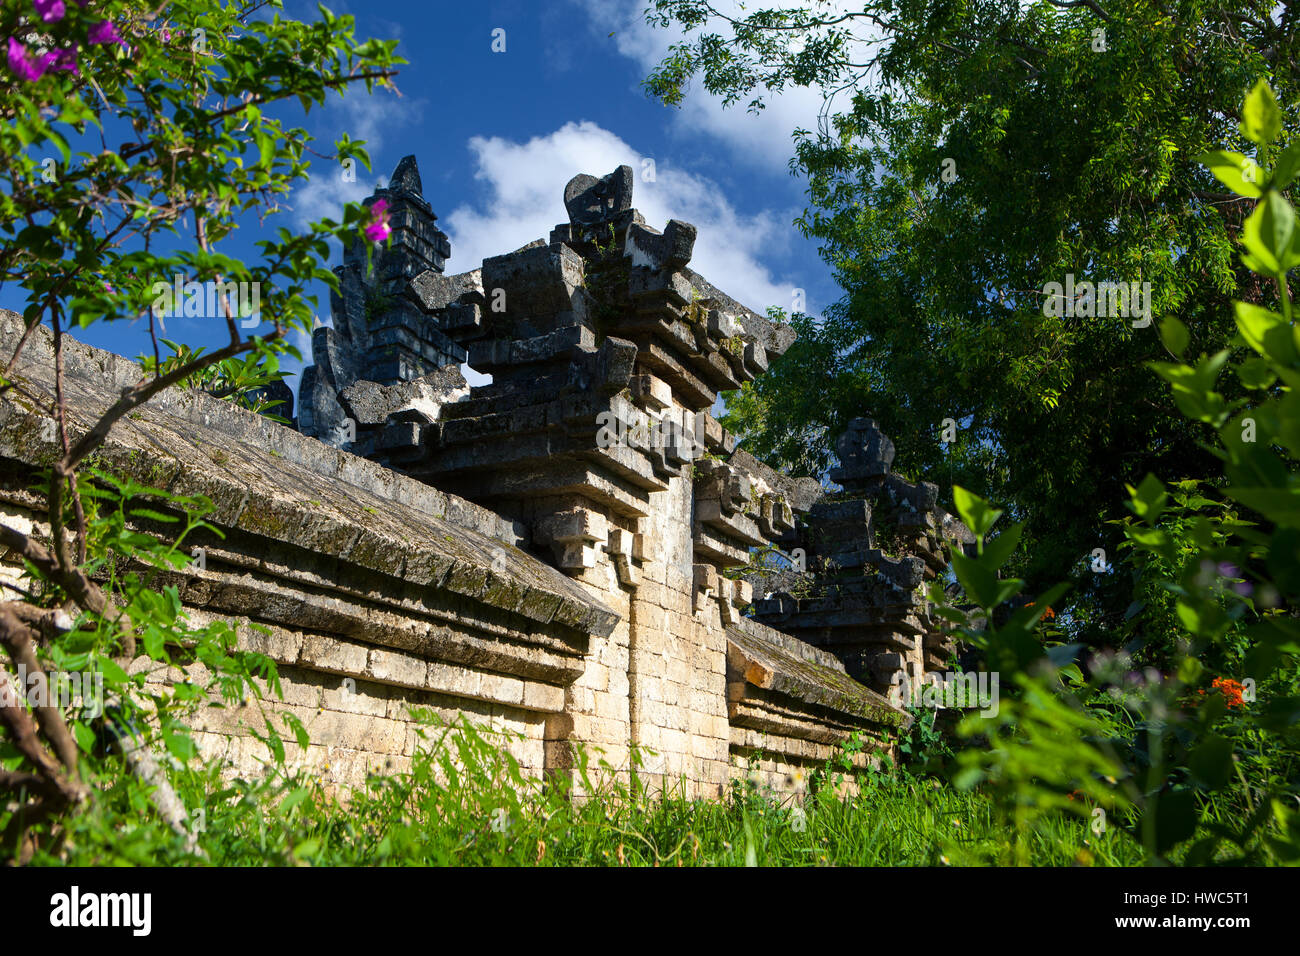 Ancien mur de briques d'un temple balinais parmi la verdure sur une journée ensoleillée, l'Indonésie Uluwatu Banque D'Images